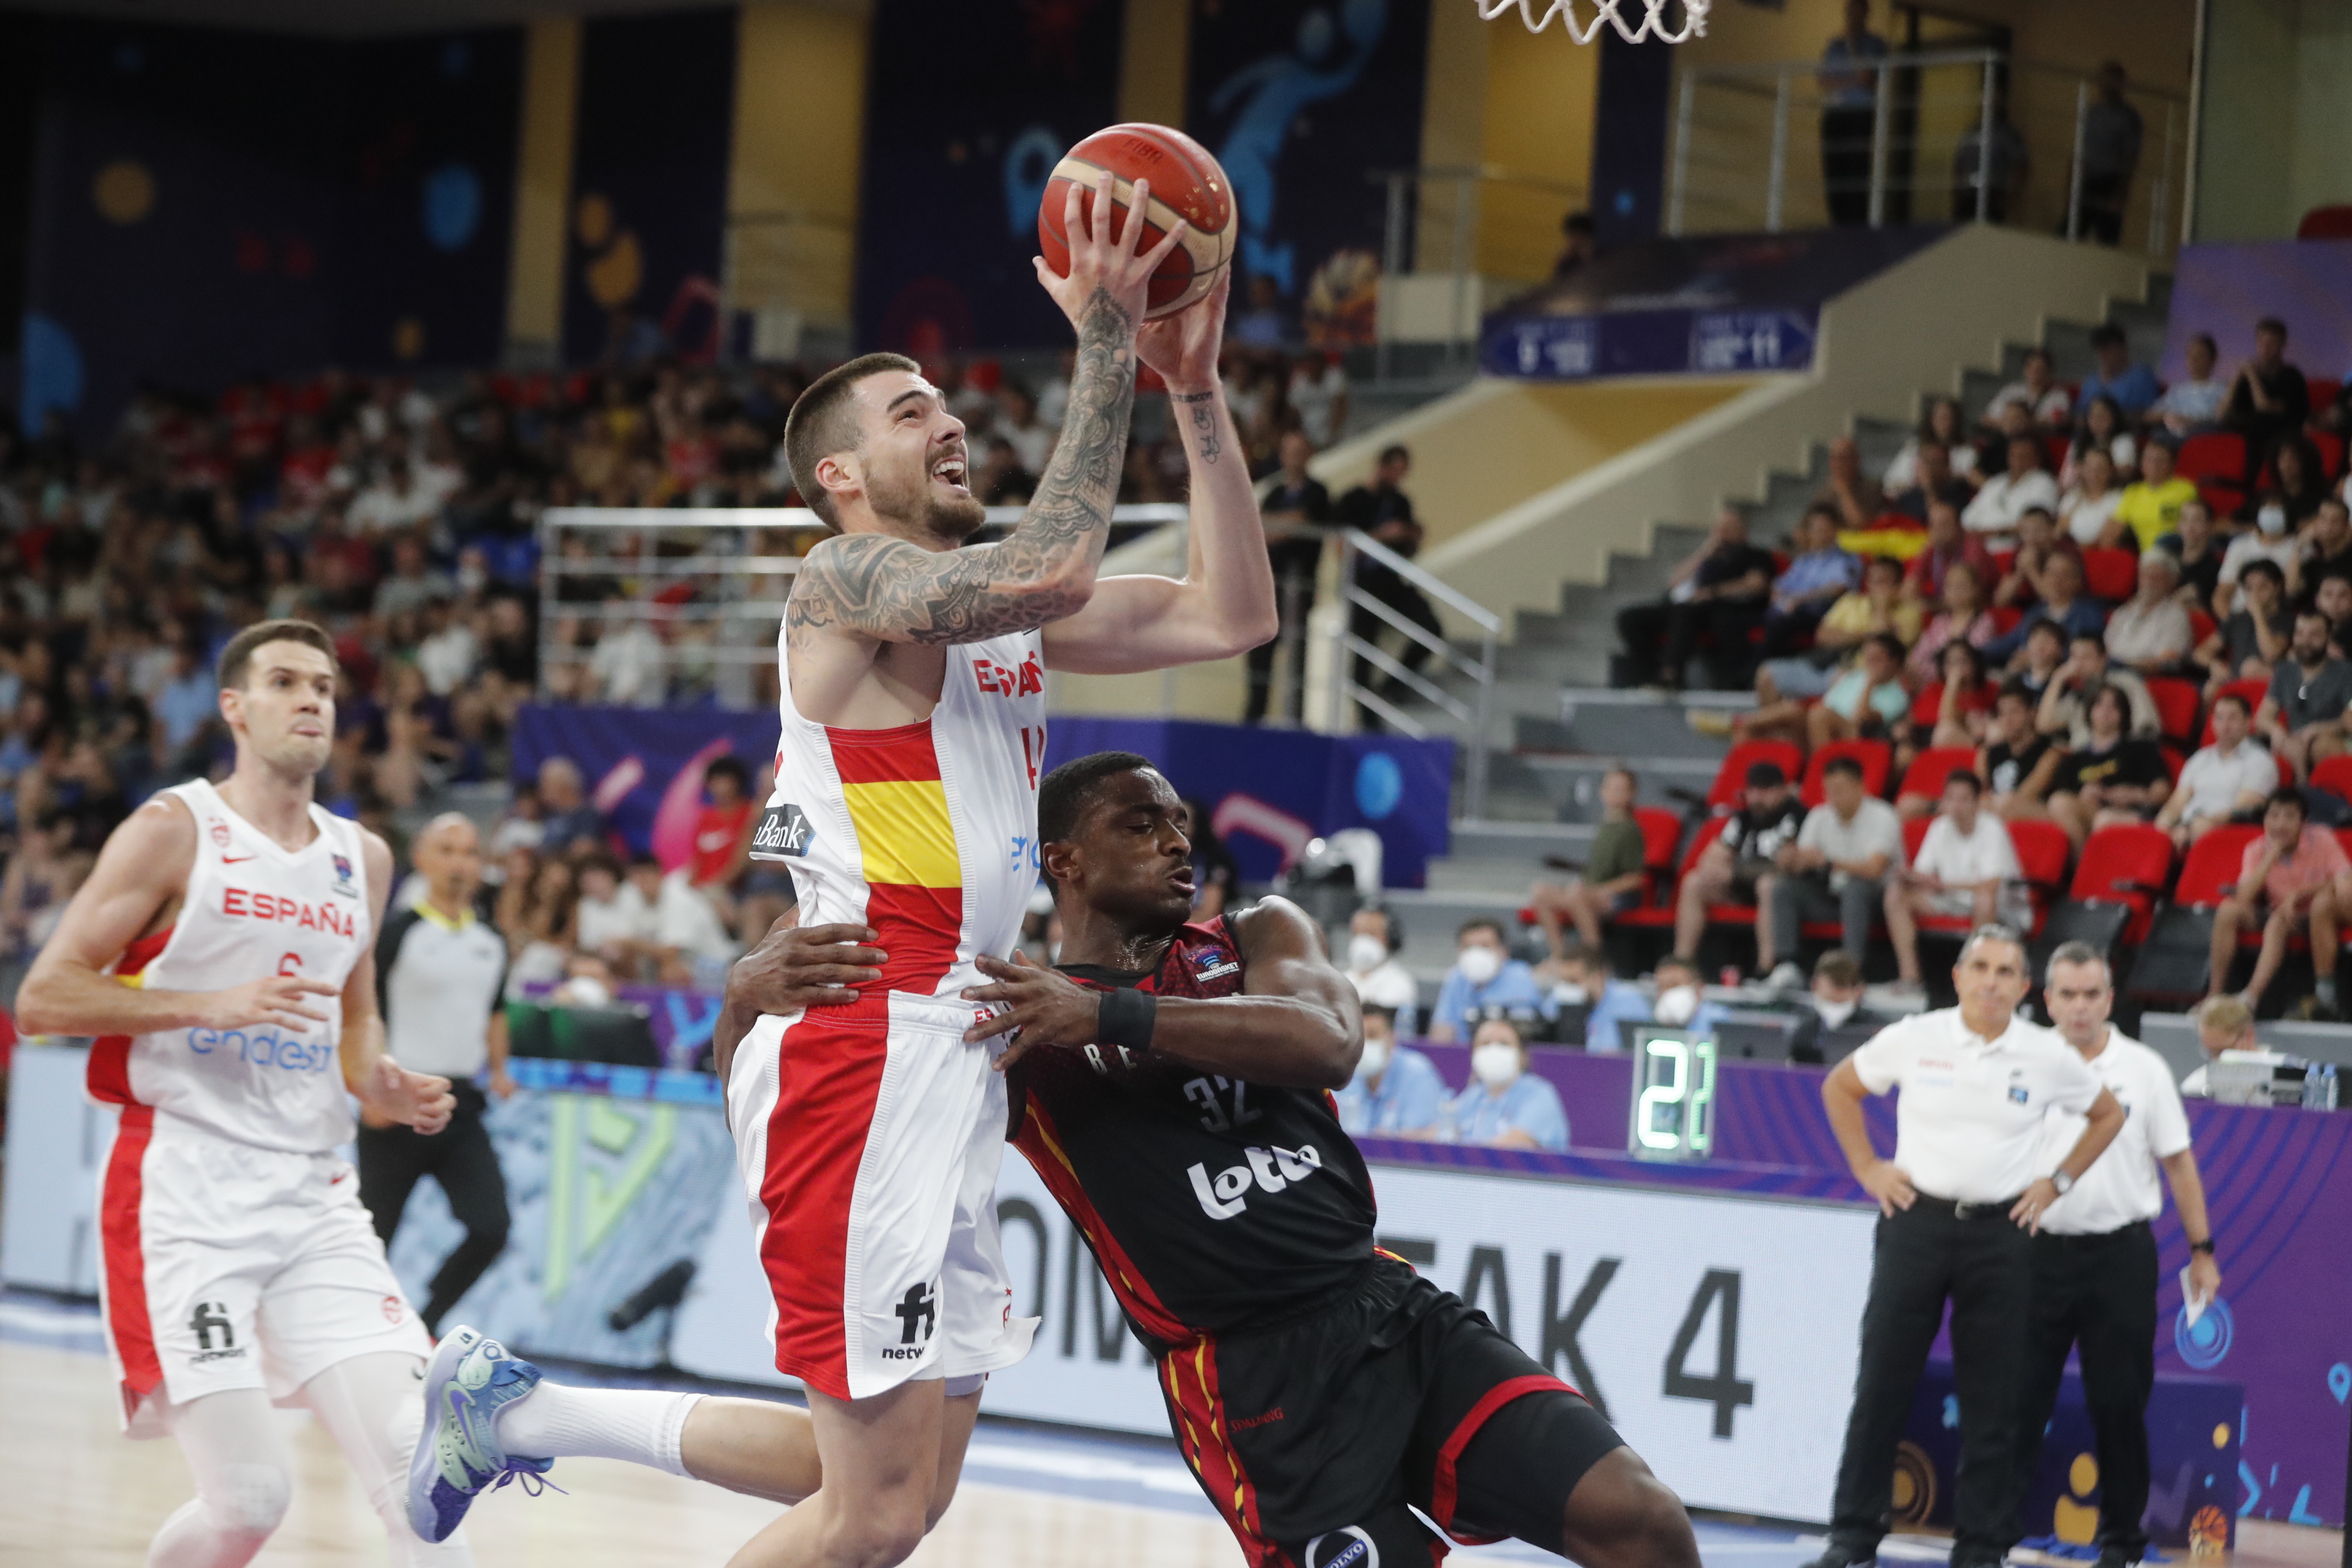 ¿Cómo ha quedado Bélgica España de baloncesto